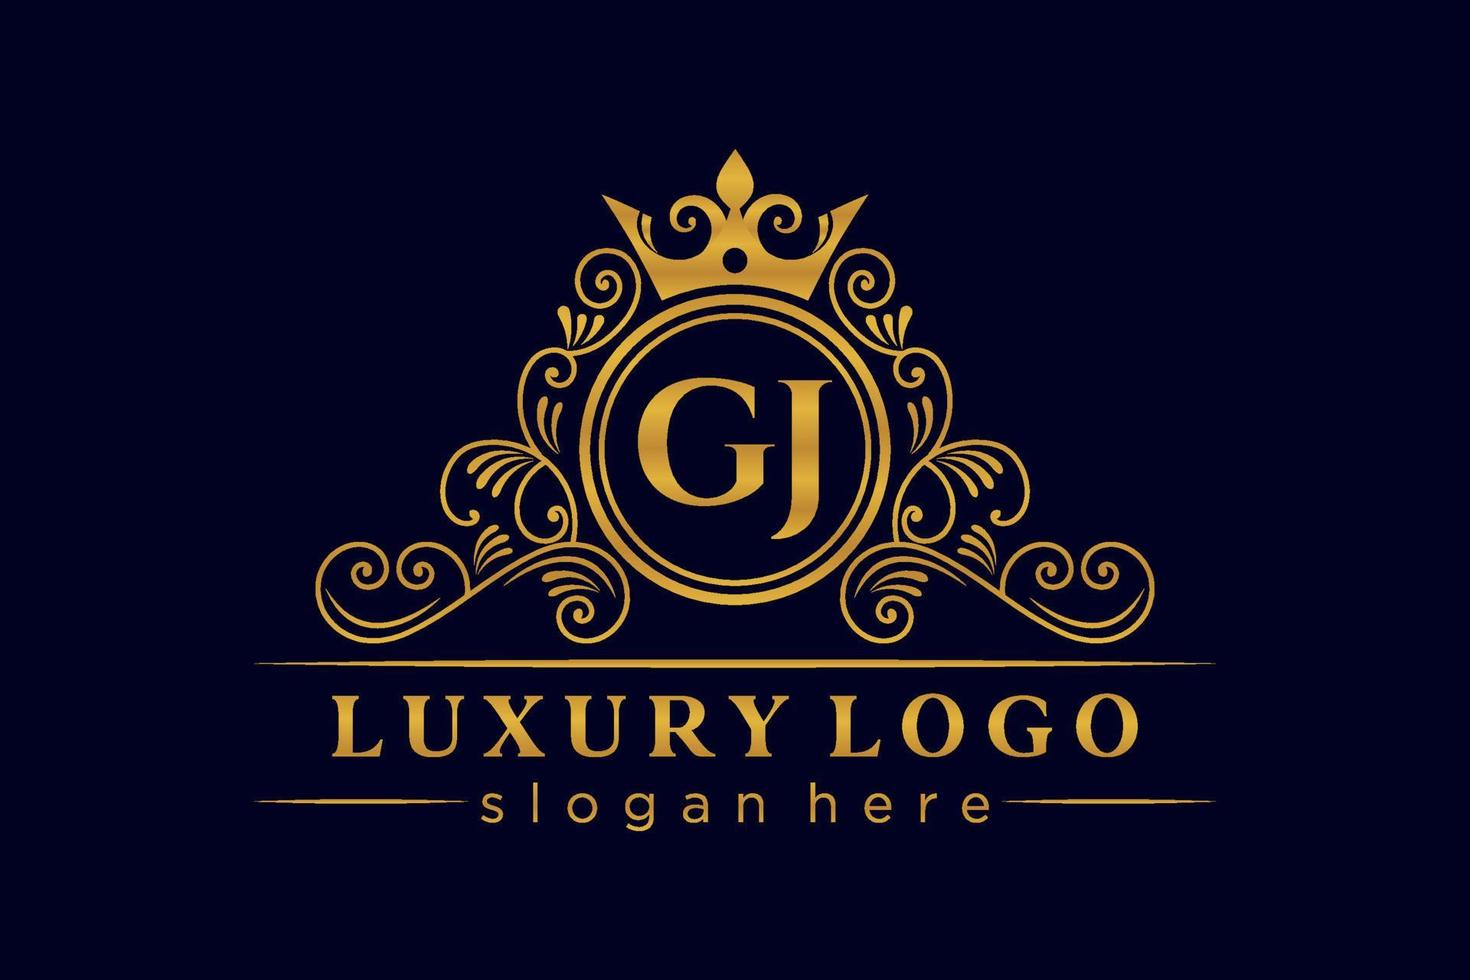 GJ Initial Letter Gold calligraphic feminine floral hand drawn heraldic monogram antique vintage style luxury logo design Premium Vector